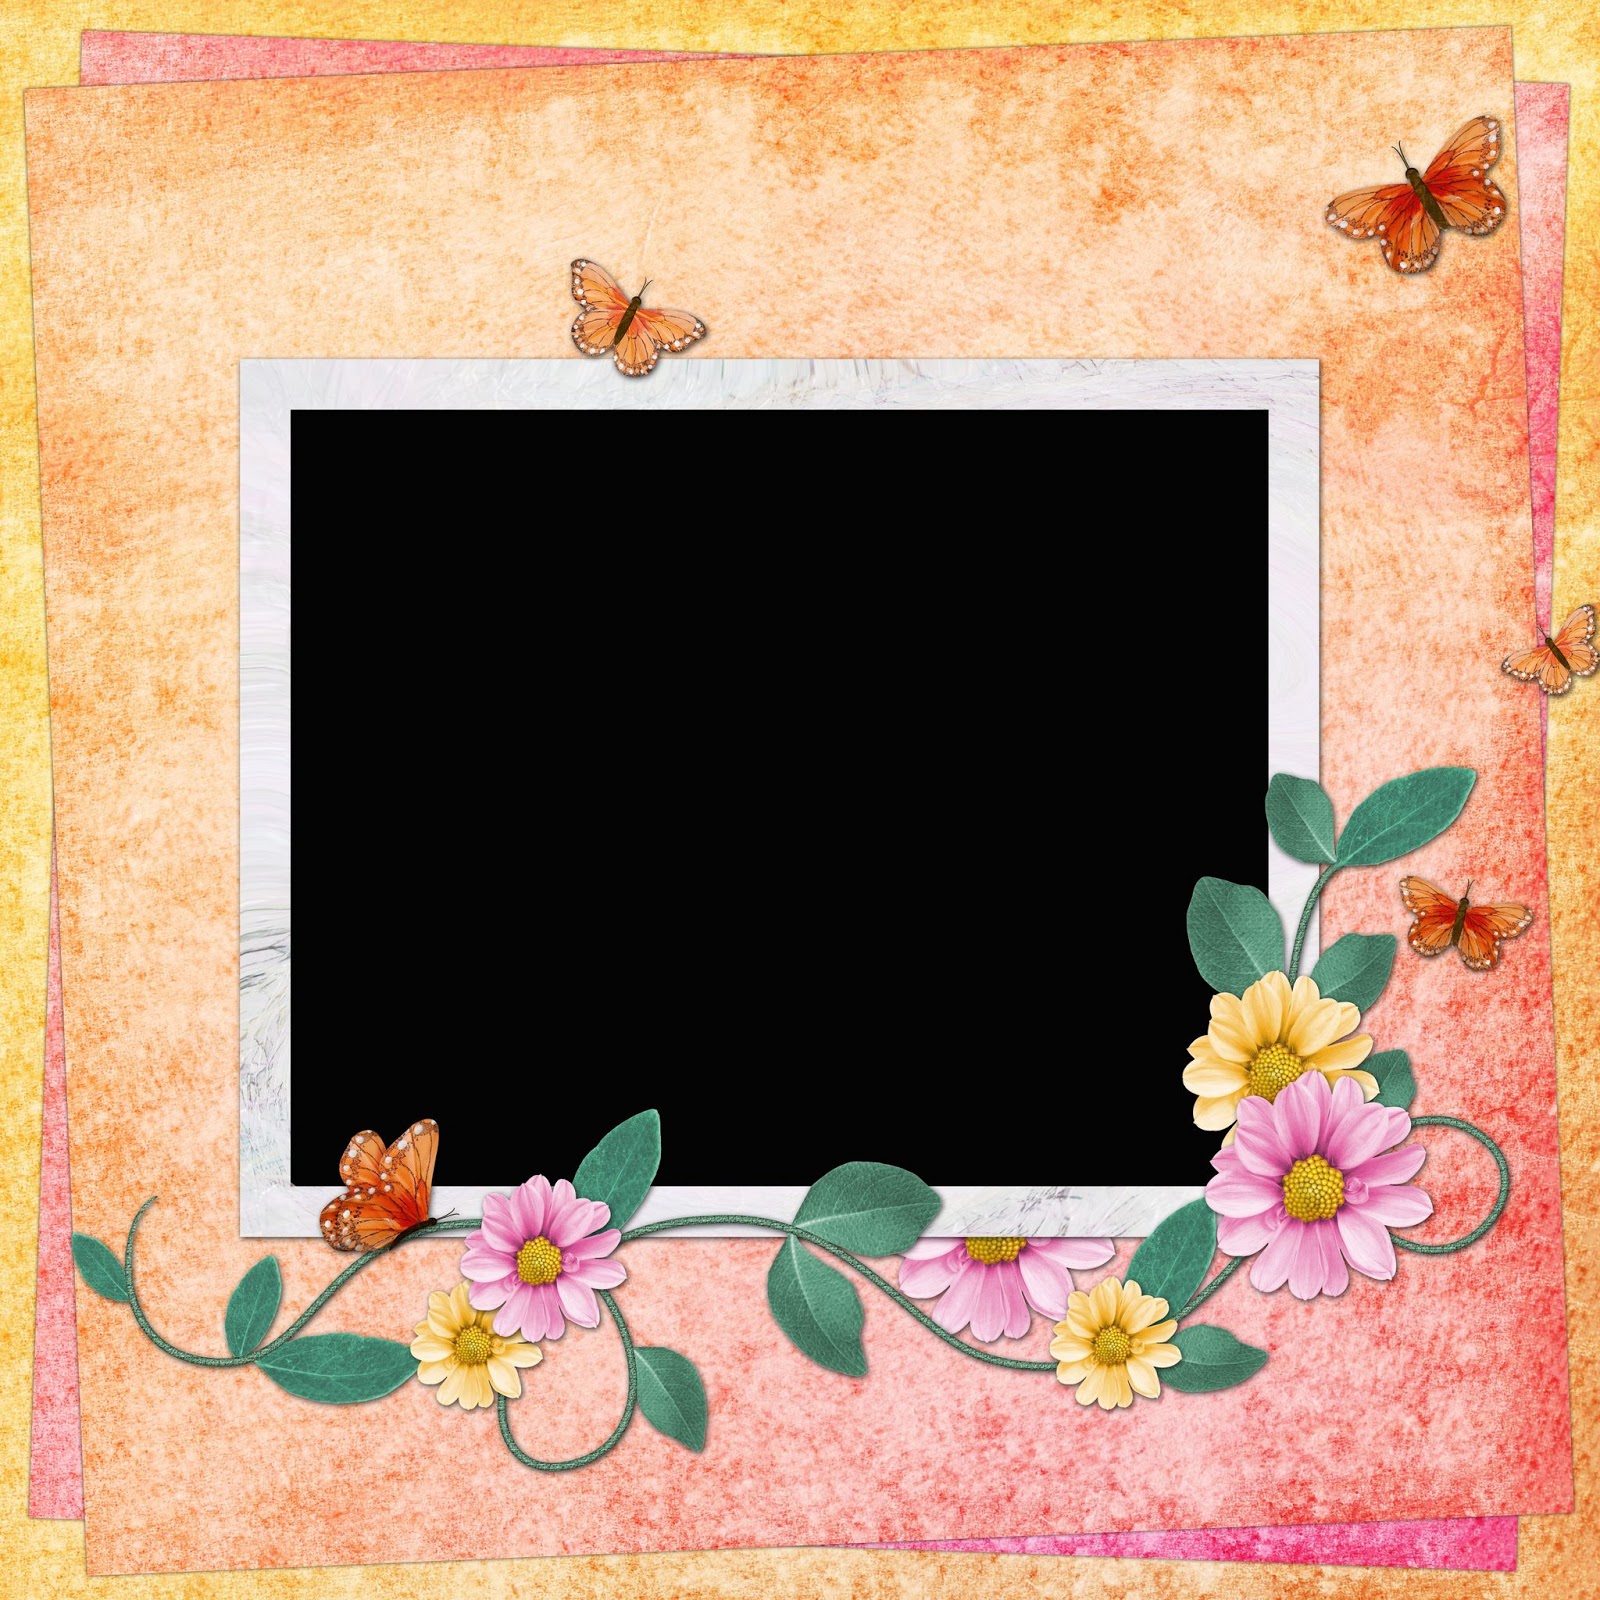 Banco de Imágenes Gratis: con flores y mariposas poner tu